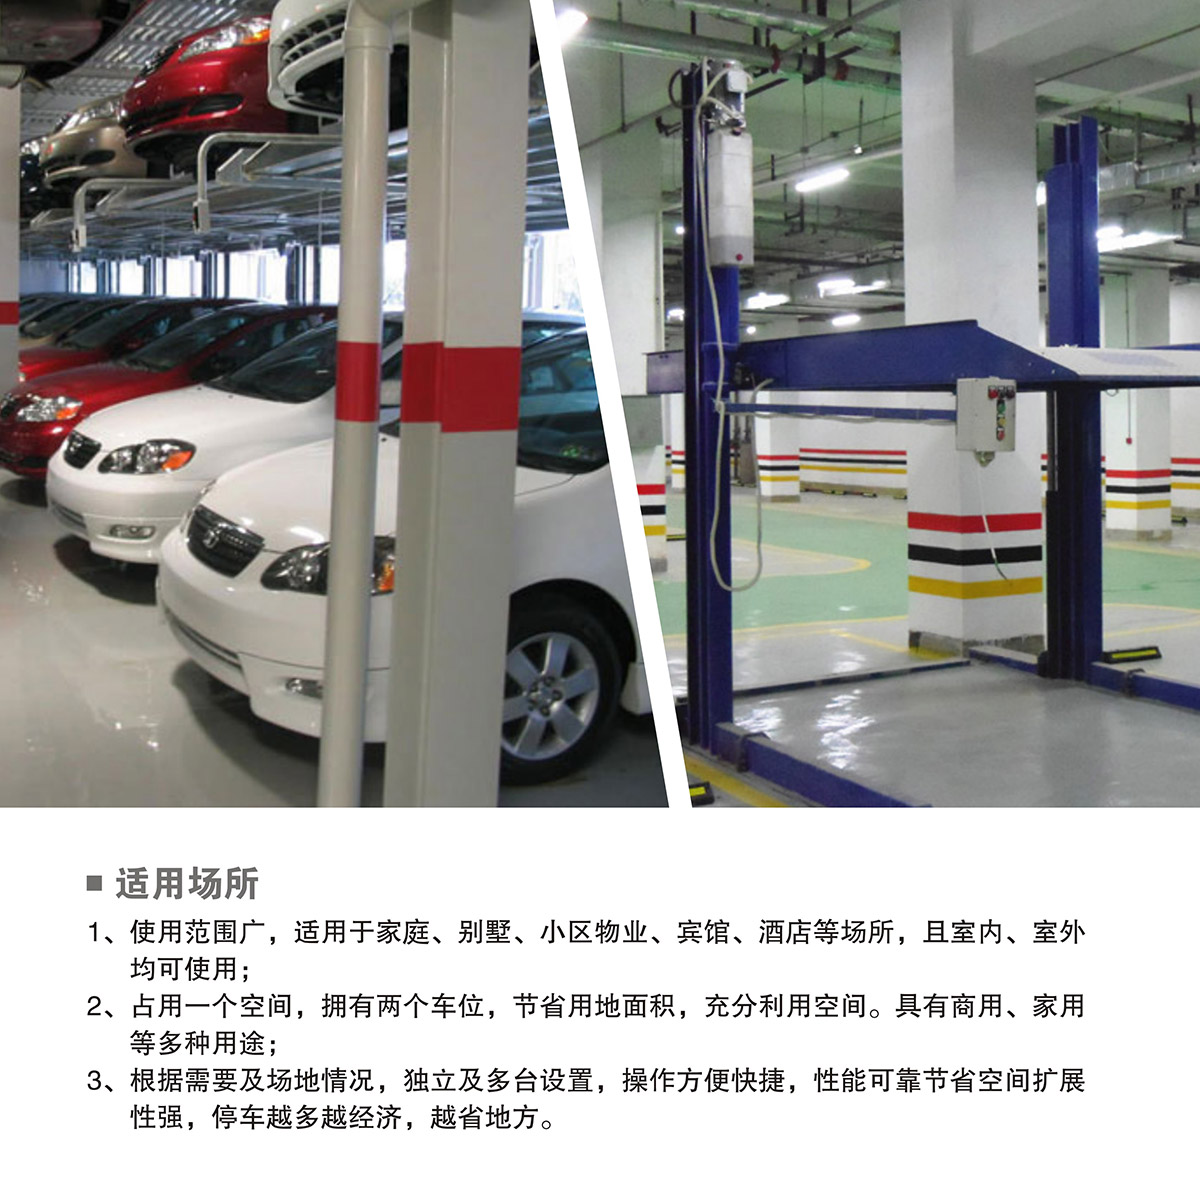 机械停车PJS两柱简易升降立体车库设备适用场所.jpg